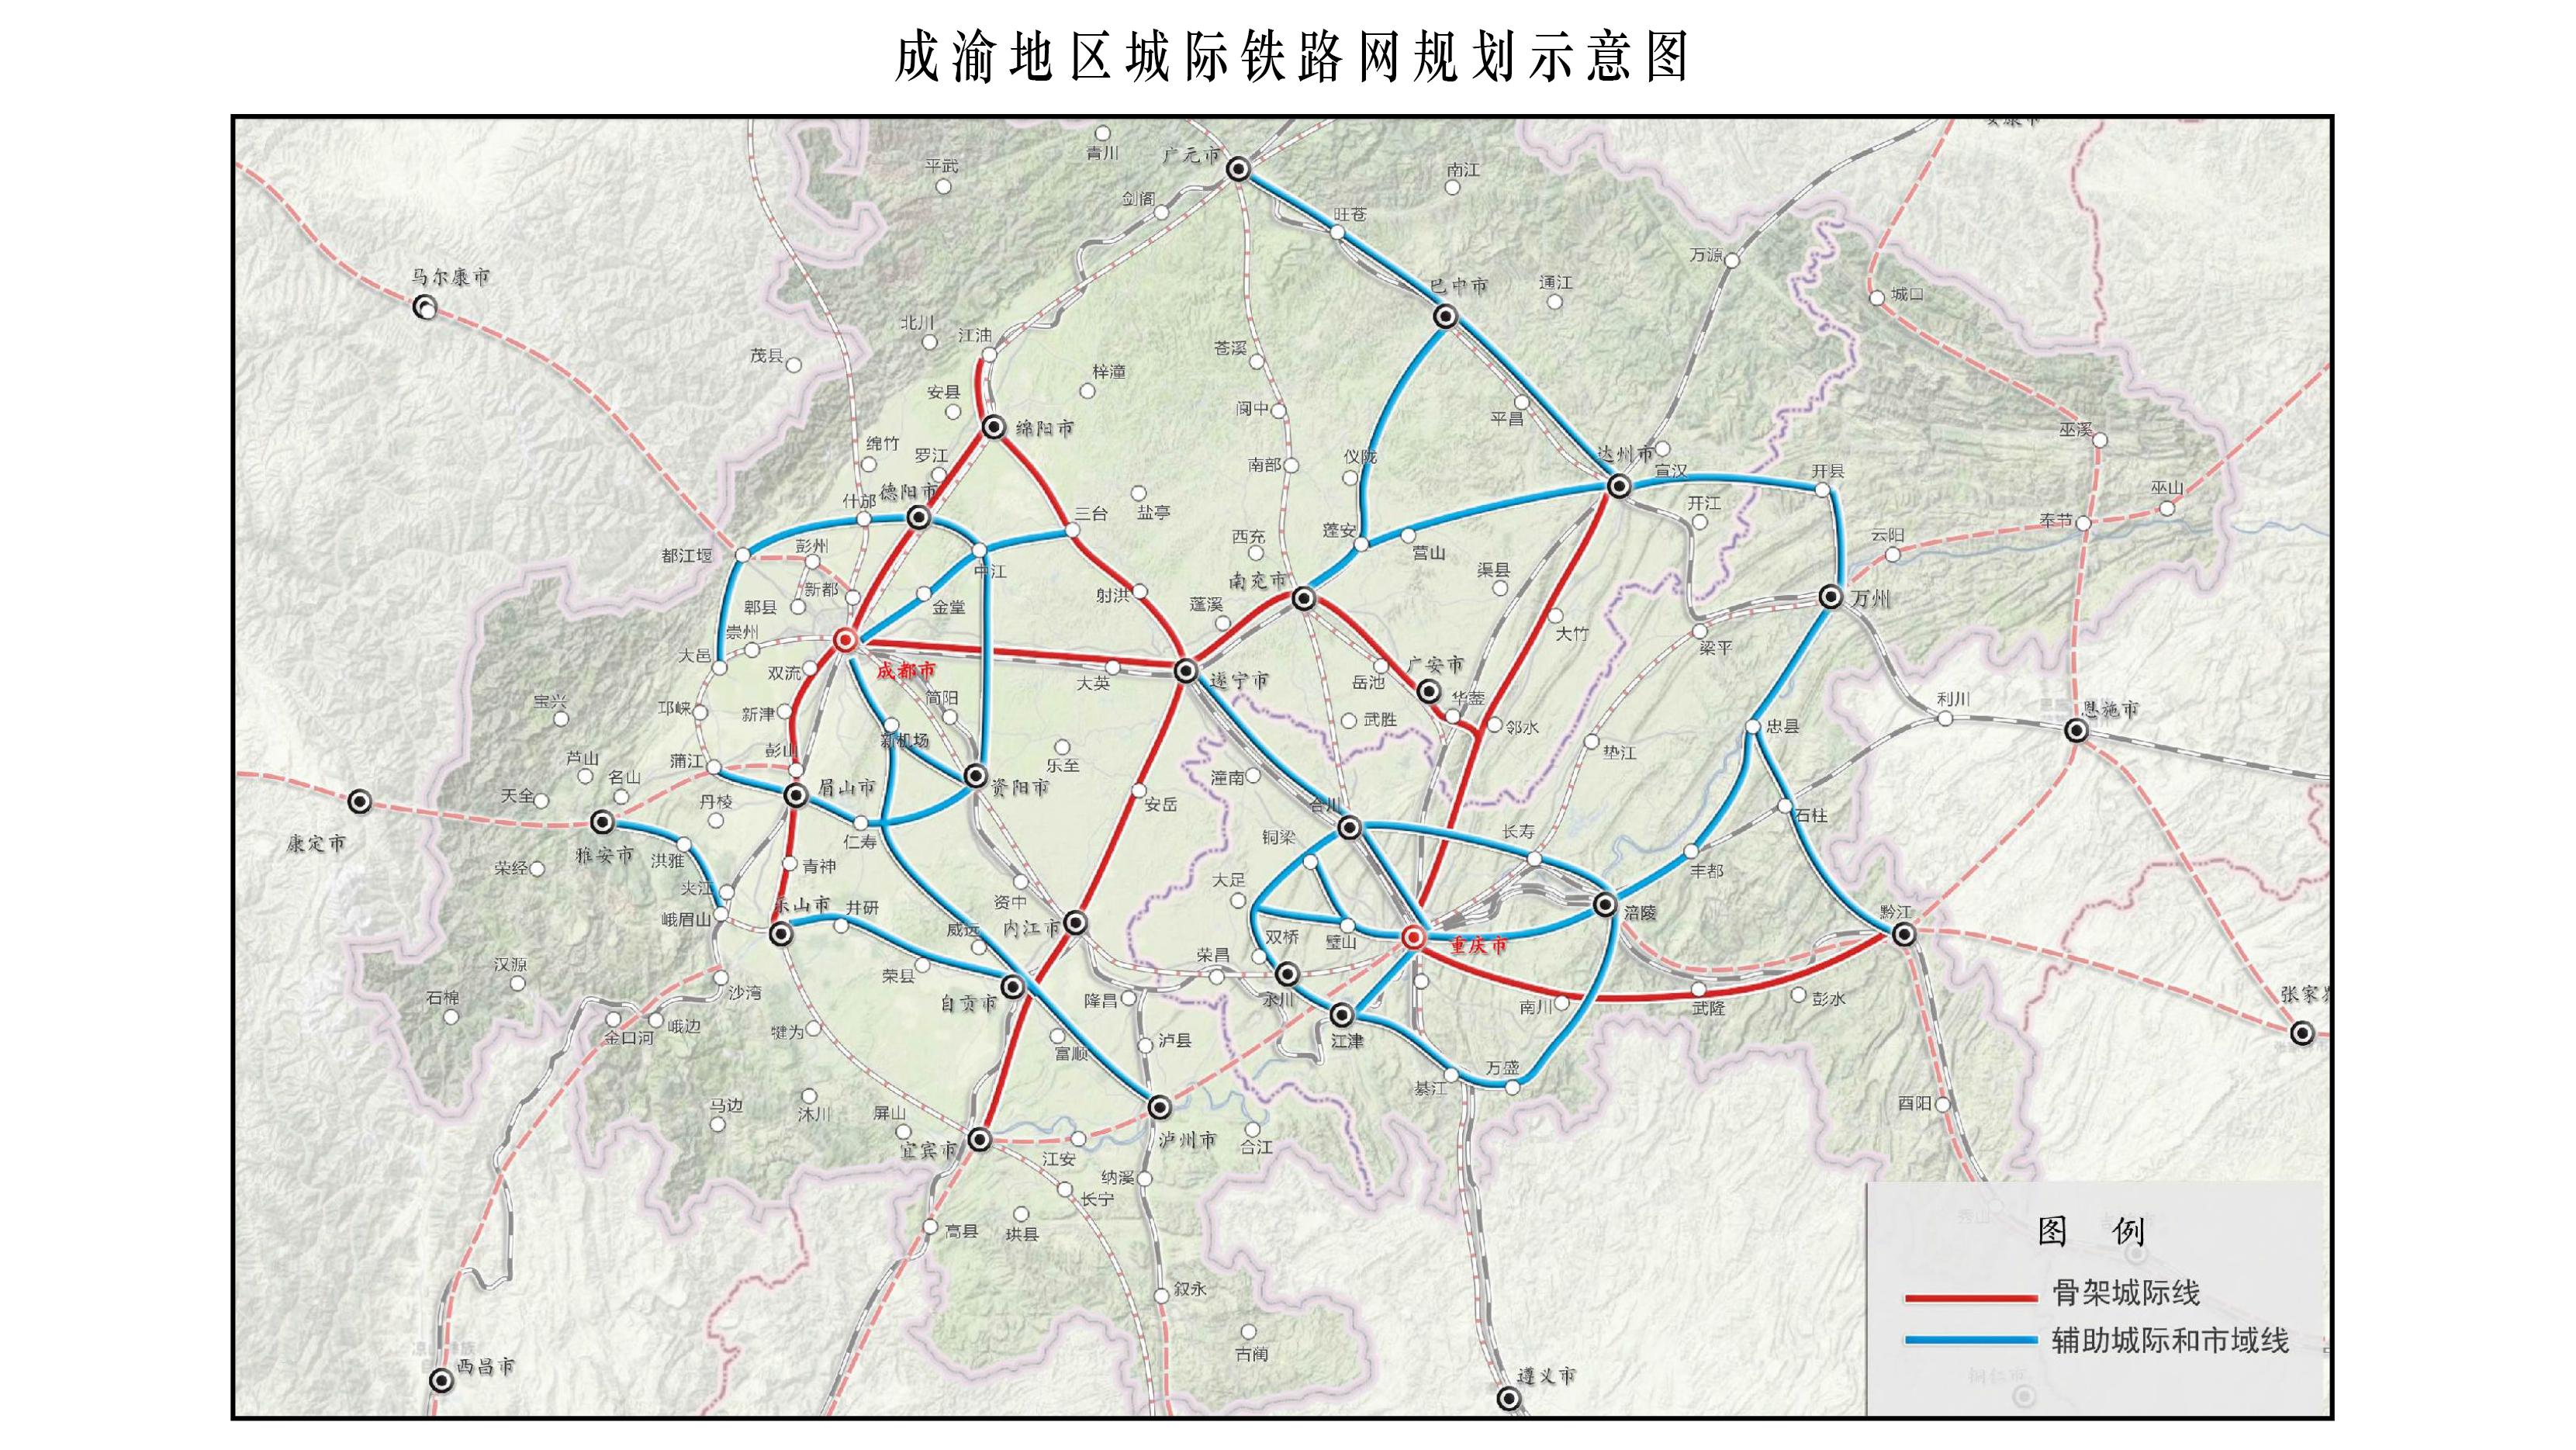 成渝地區城際鐵路規劃示意圖